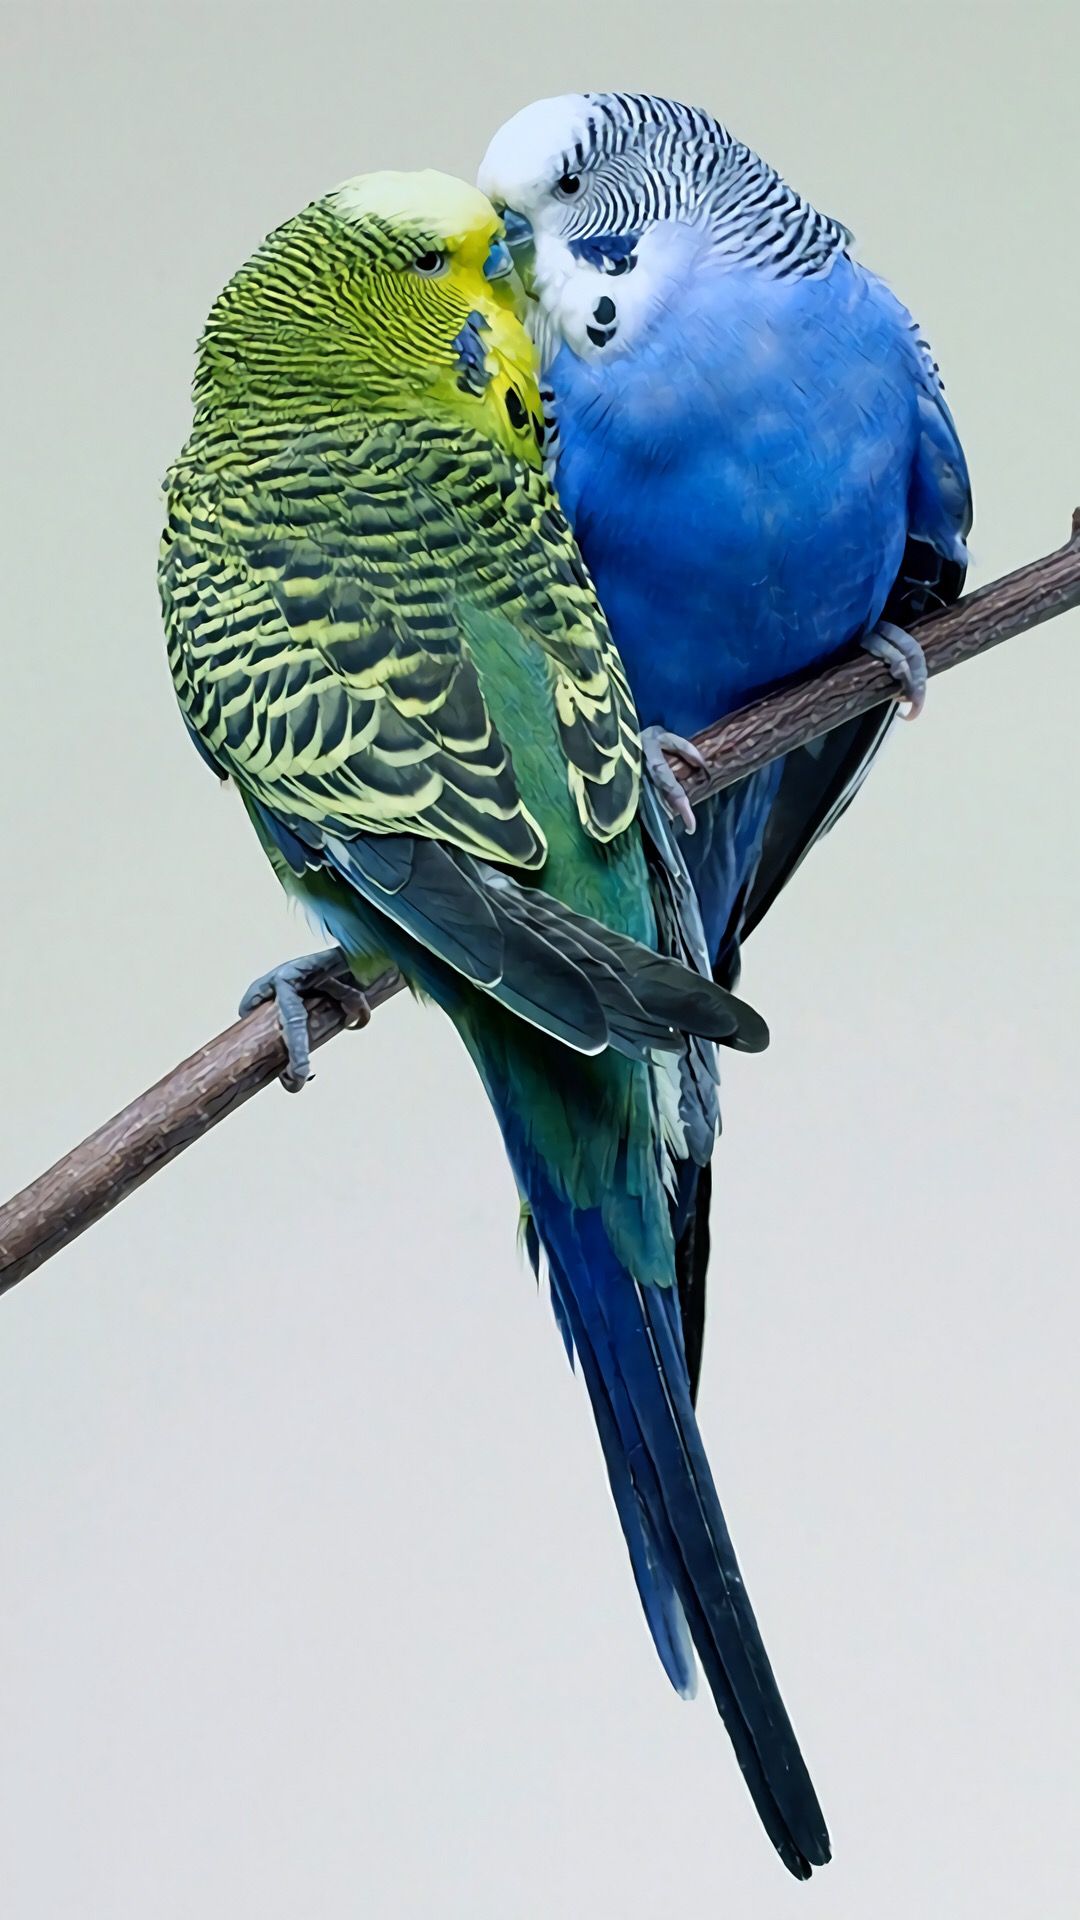 iPhone Wallpaper. Budgies bird, Budgies, Beautiful birds